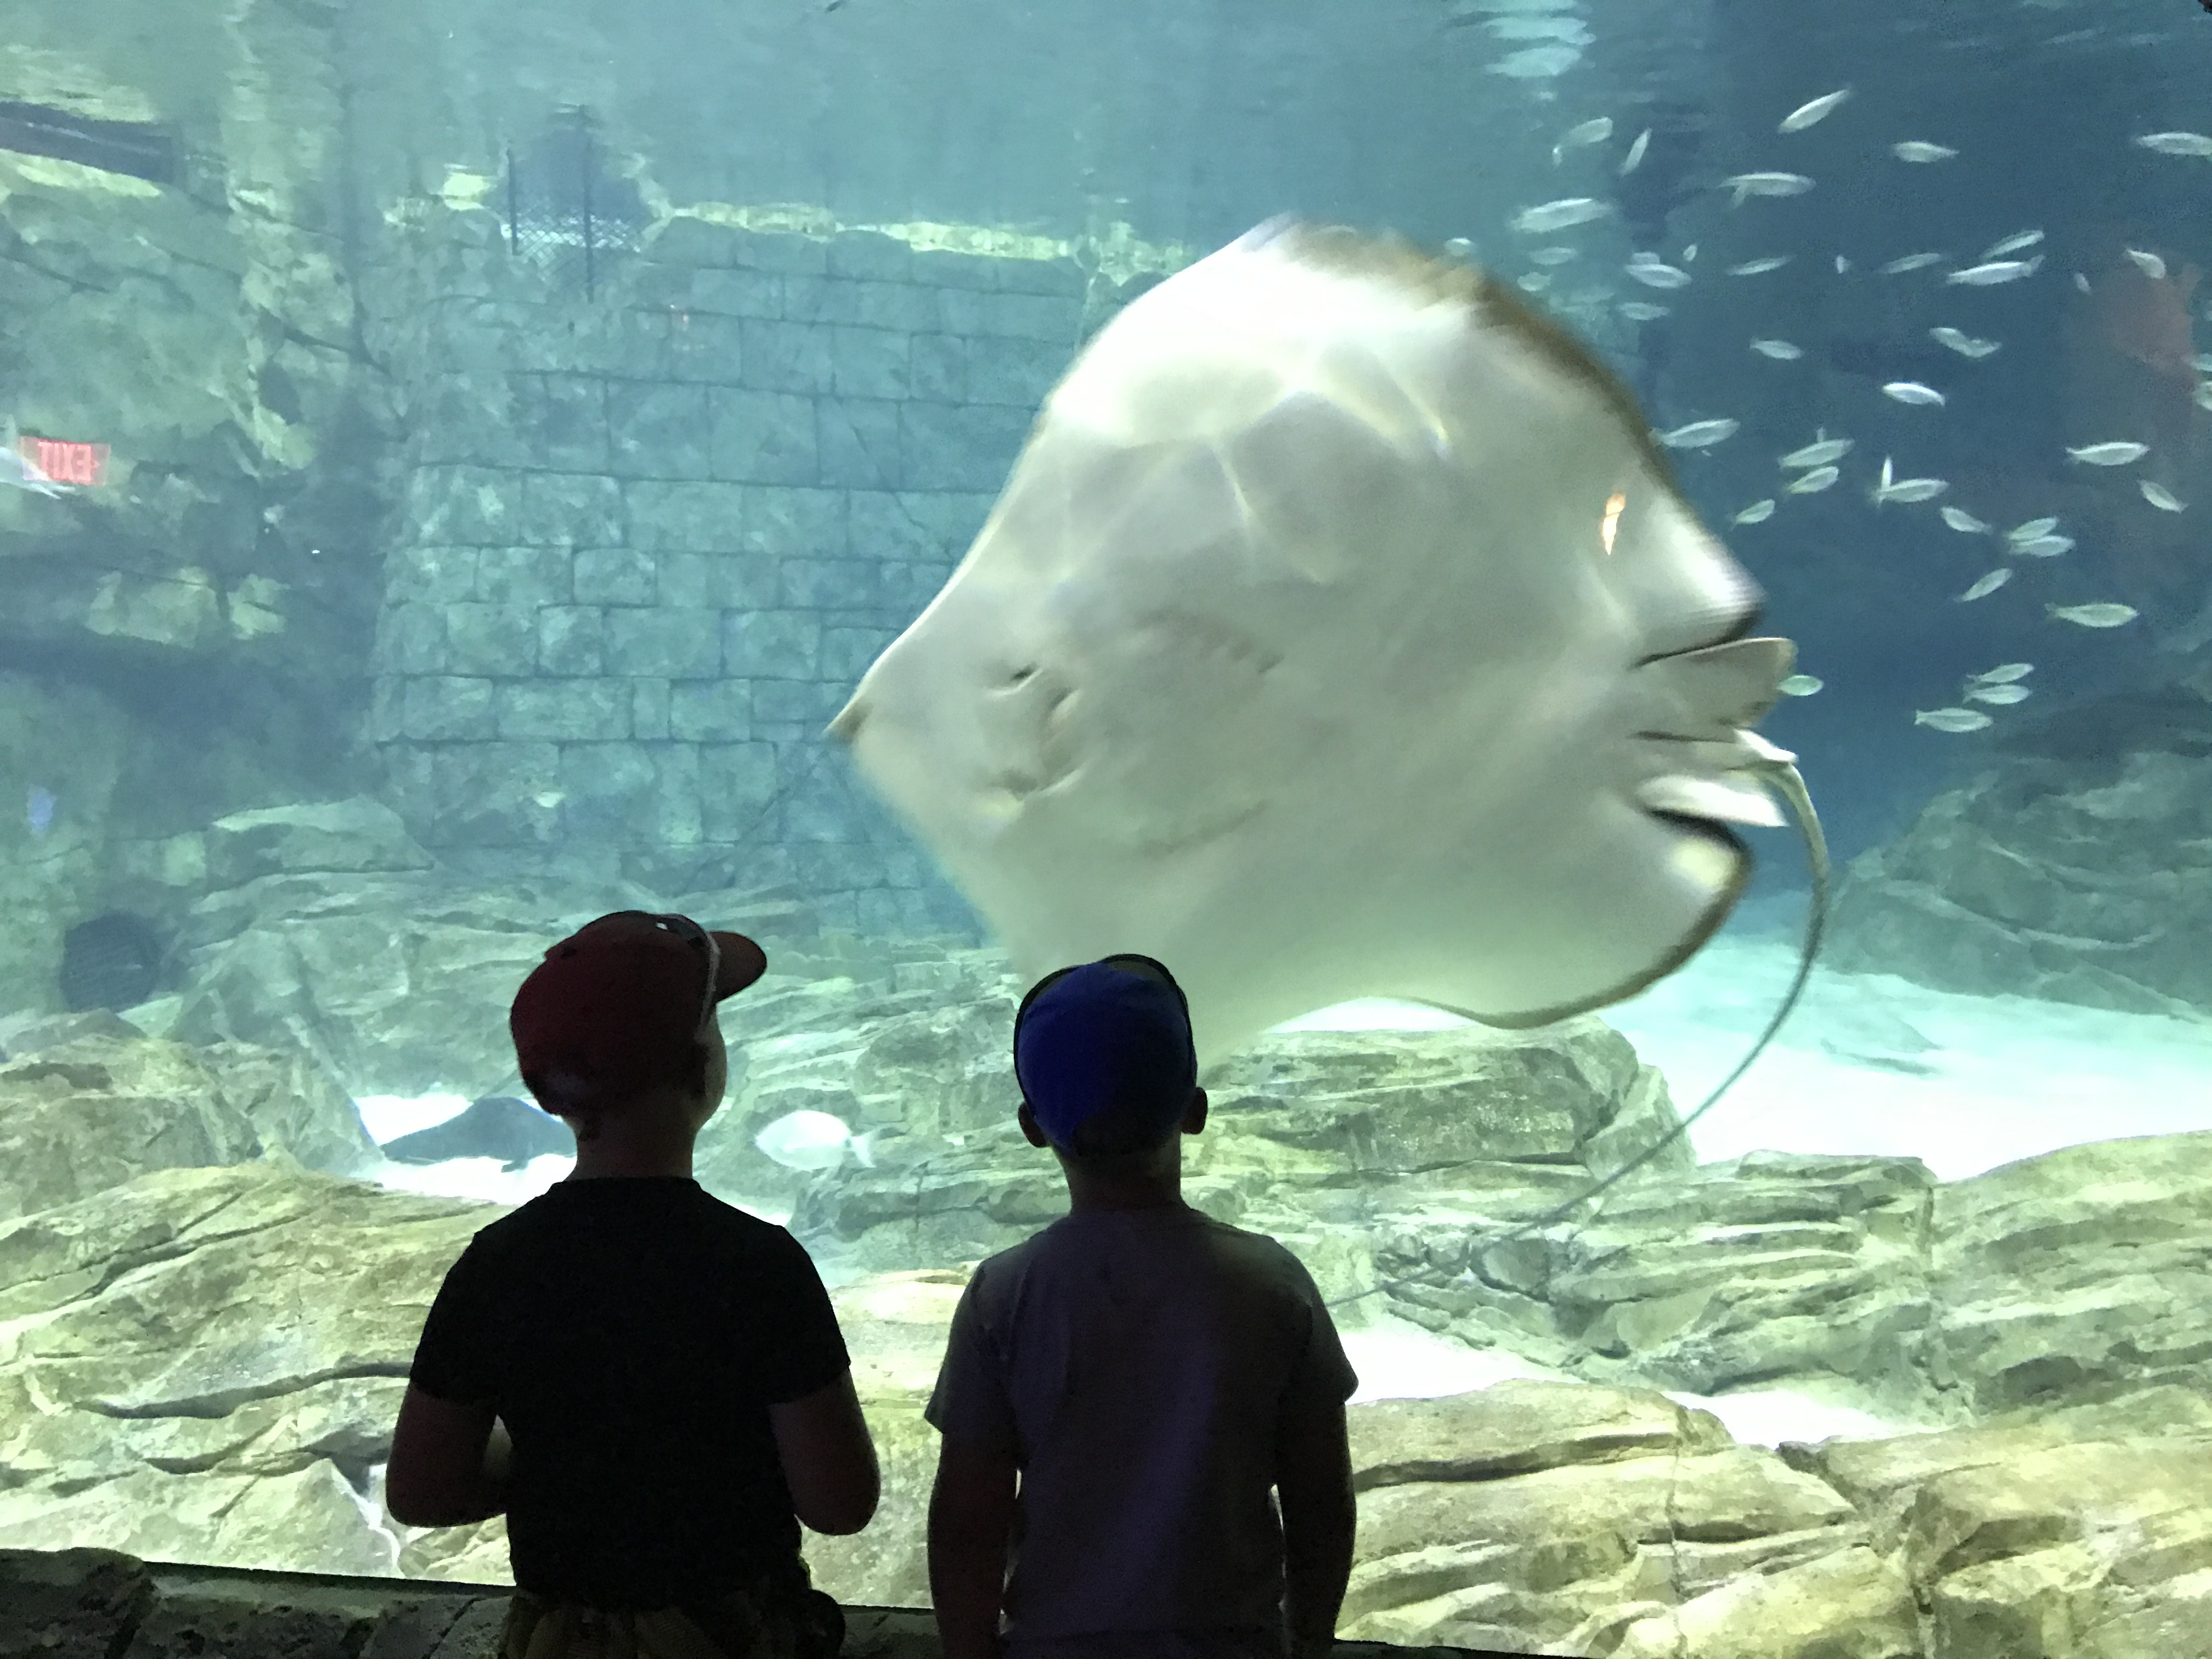 In awe at the aquarium...